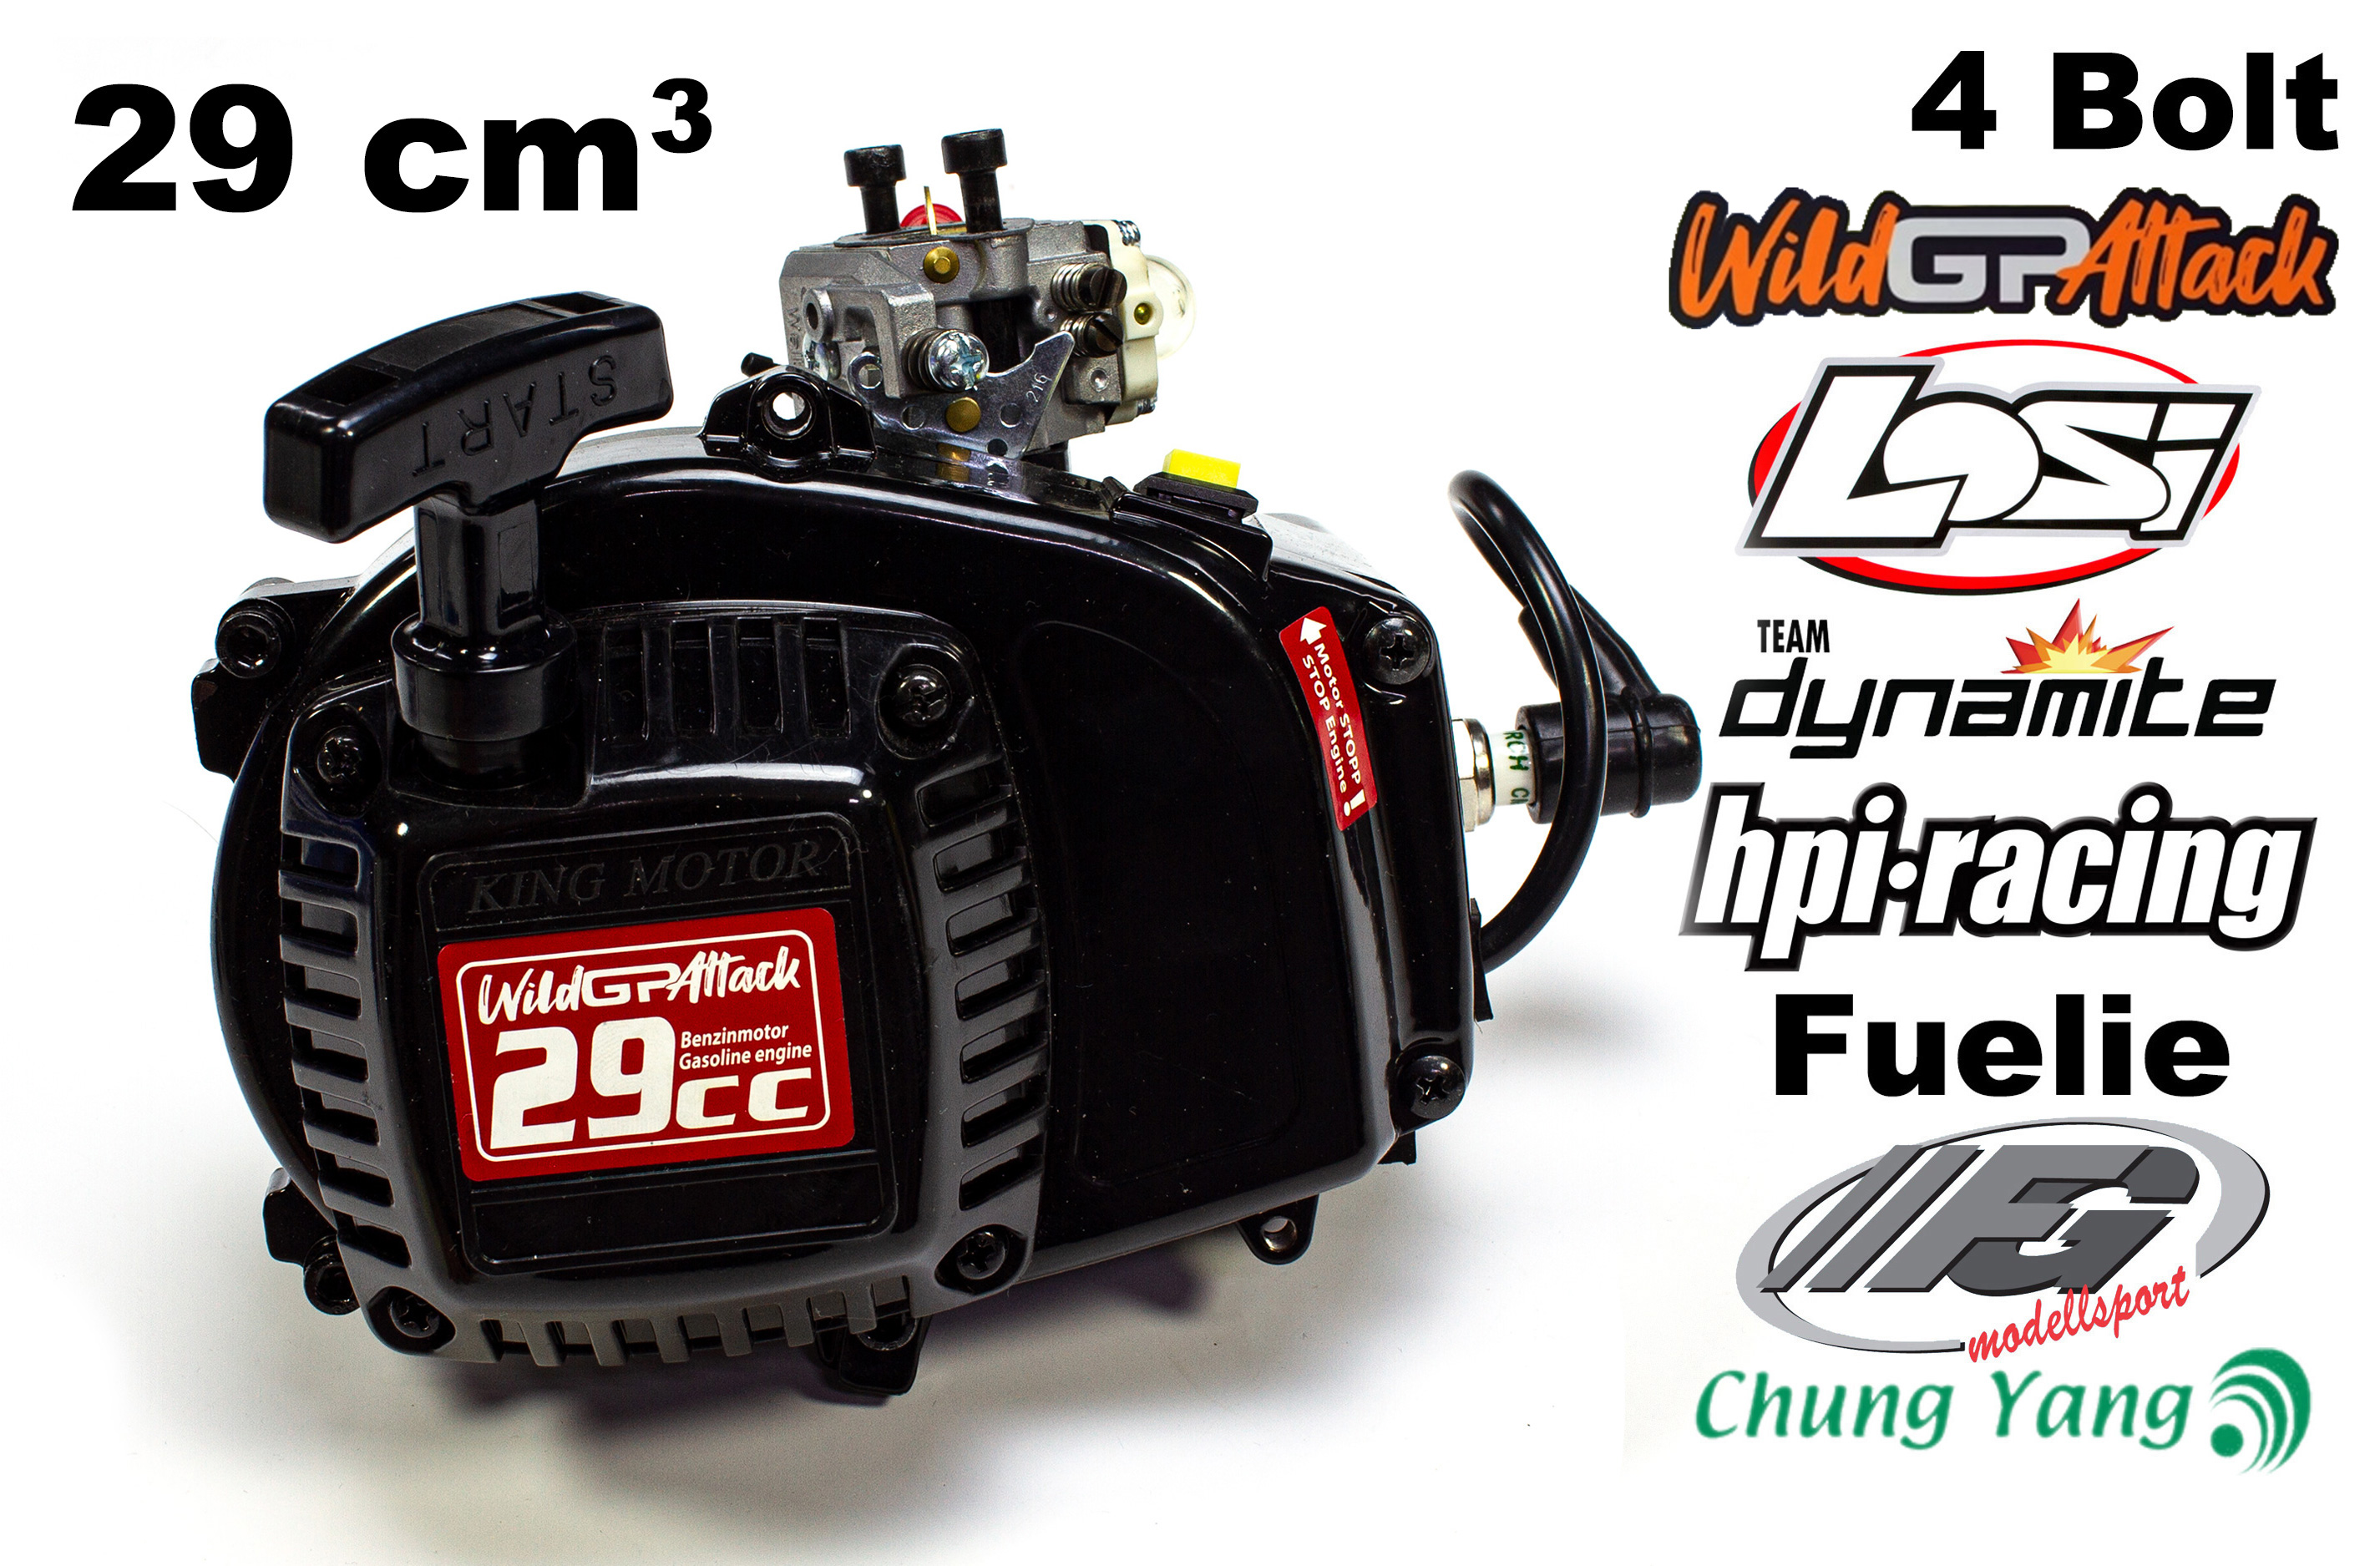 M001 Carson Wild GP Attack 29ccm Motor